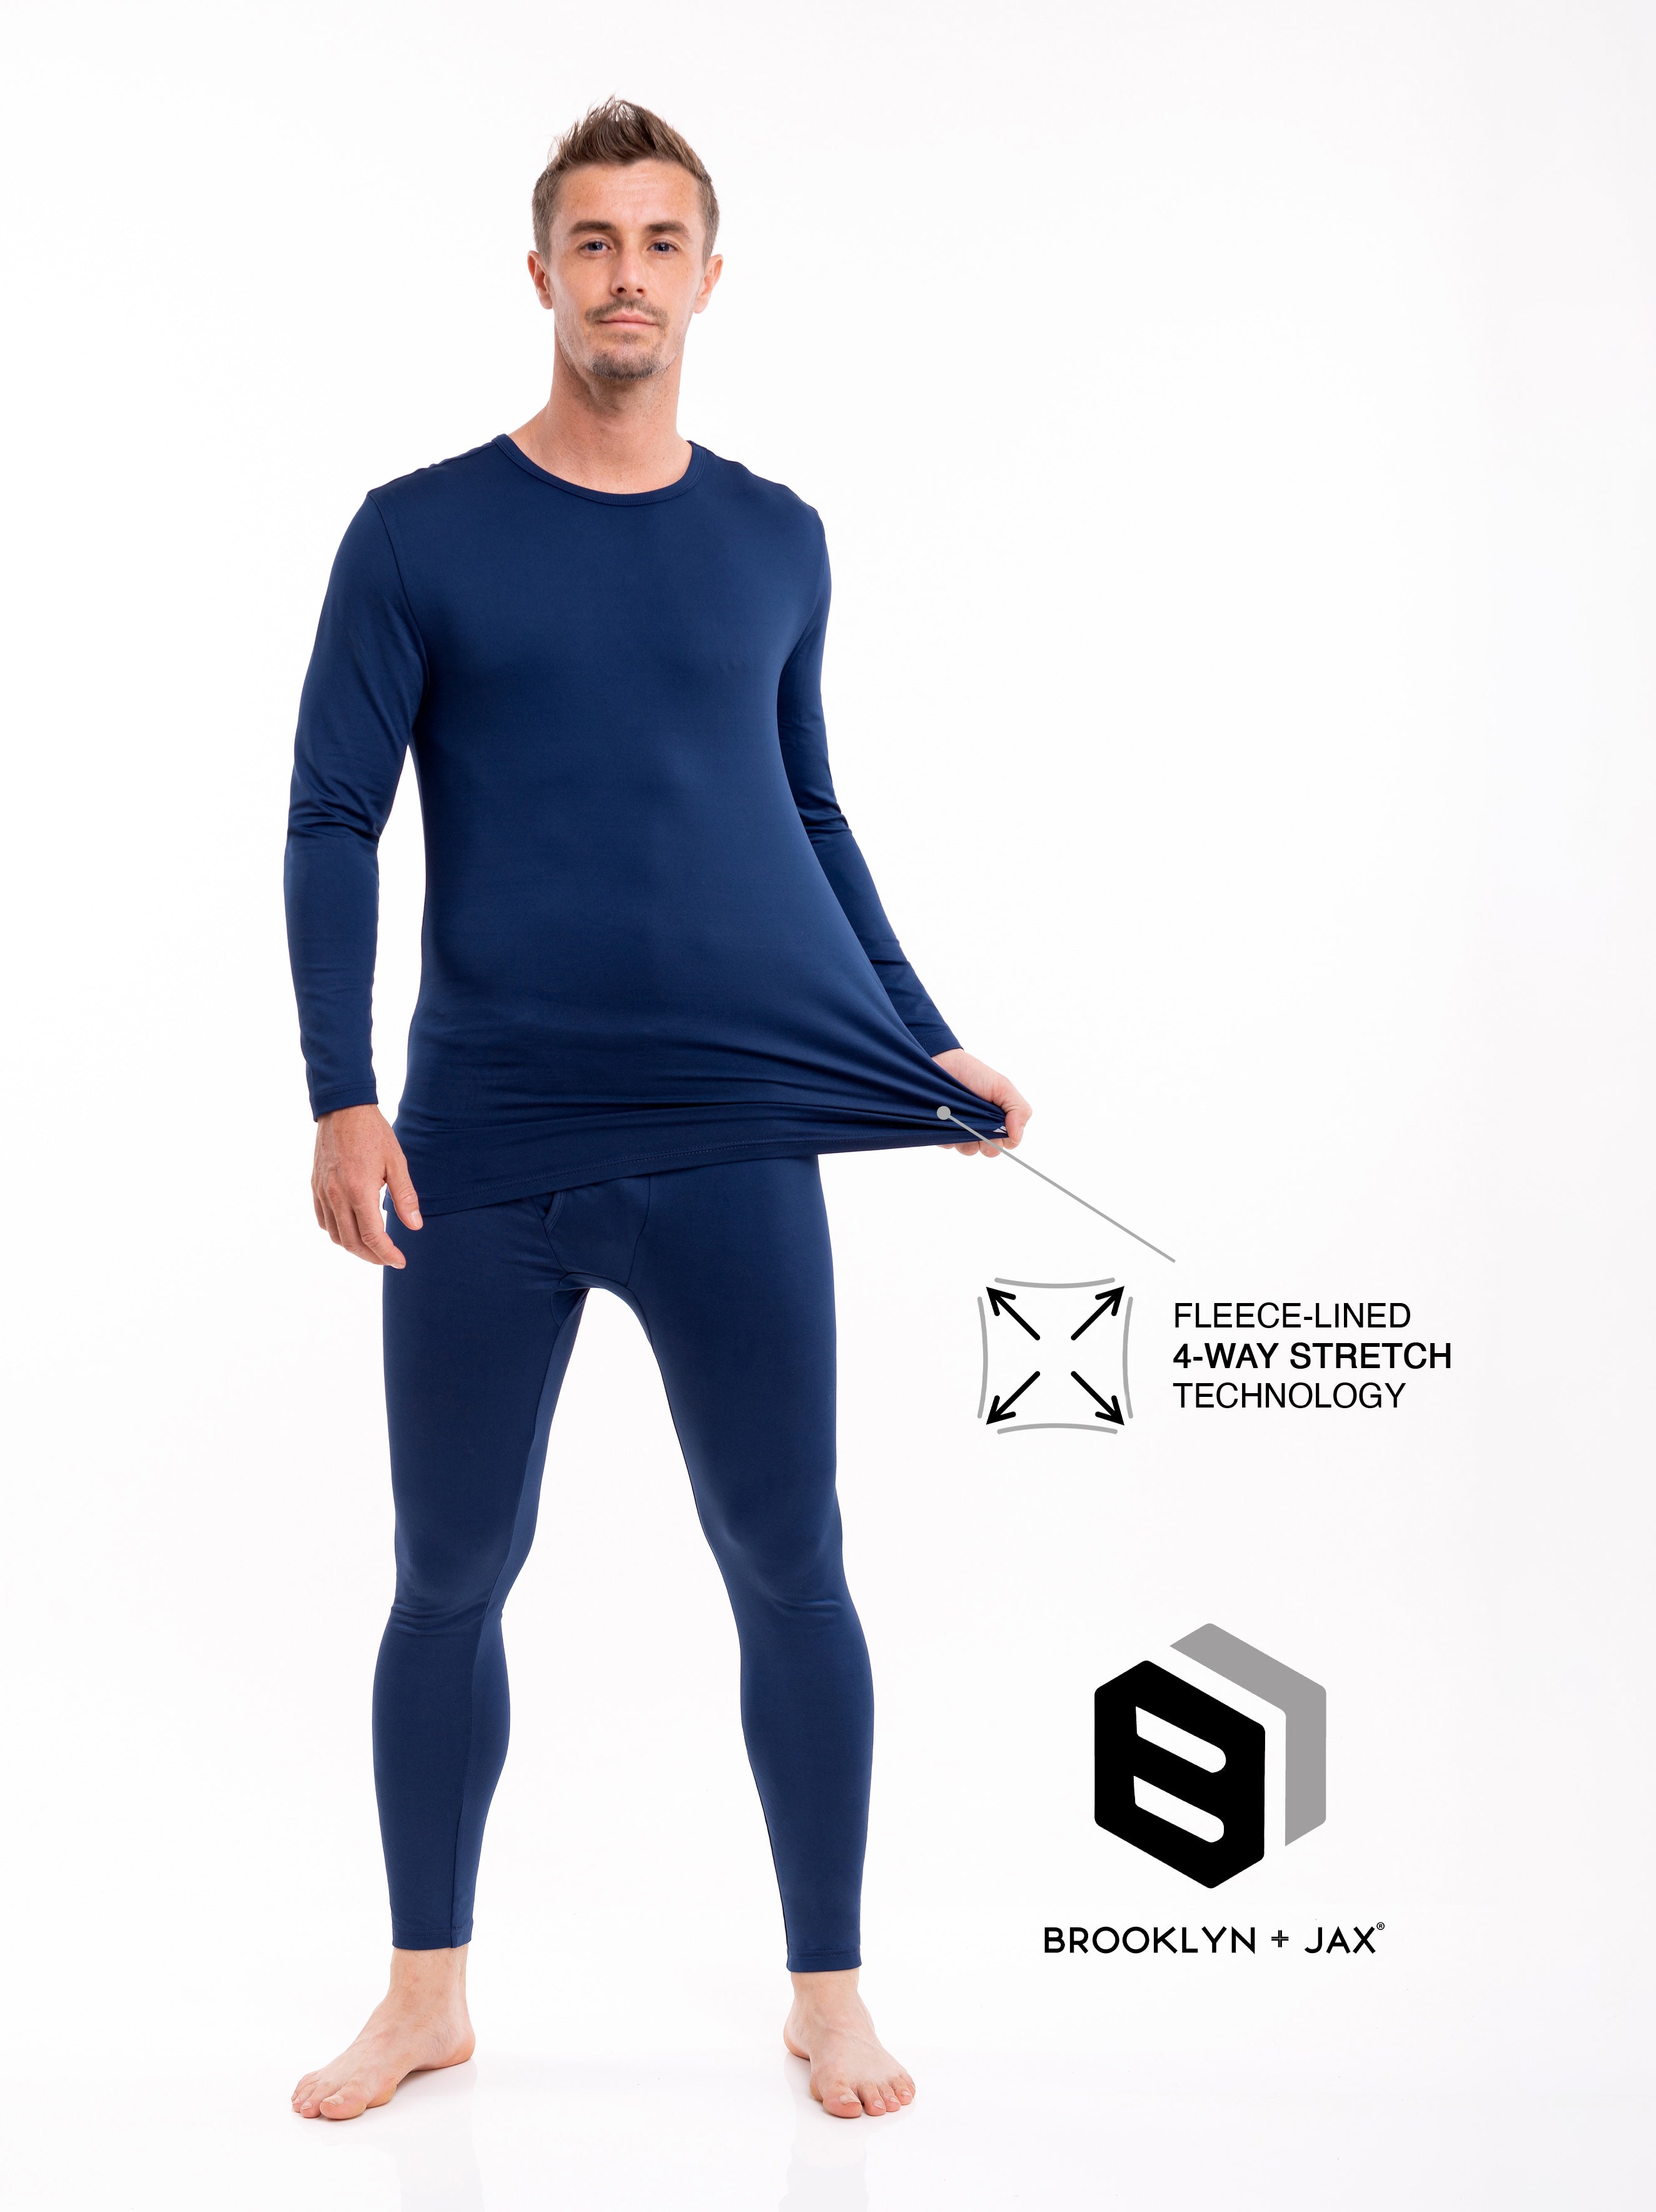 Men's Ultra-Soft Thermal Underwear Set w/ Fleece Lining | 2 Piece